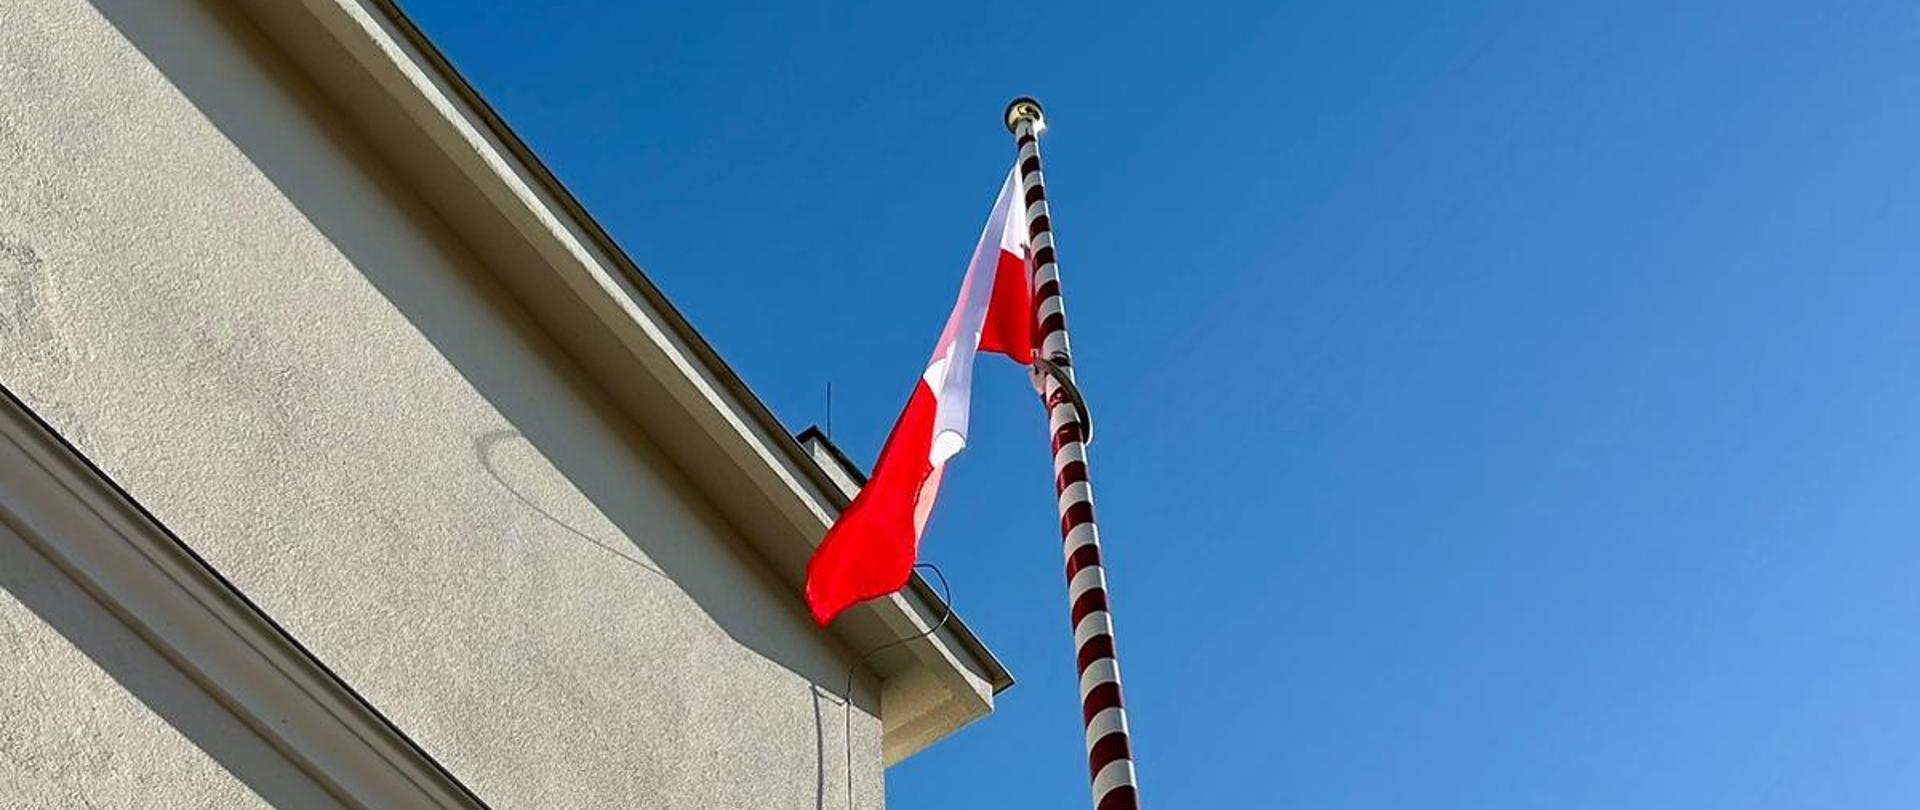 Zdjęcie przedstawia Flagę Rzeczypospolitej Polskiej zawieszoną na maszcie z okazji obchodów Dnia flagi państwowej. 